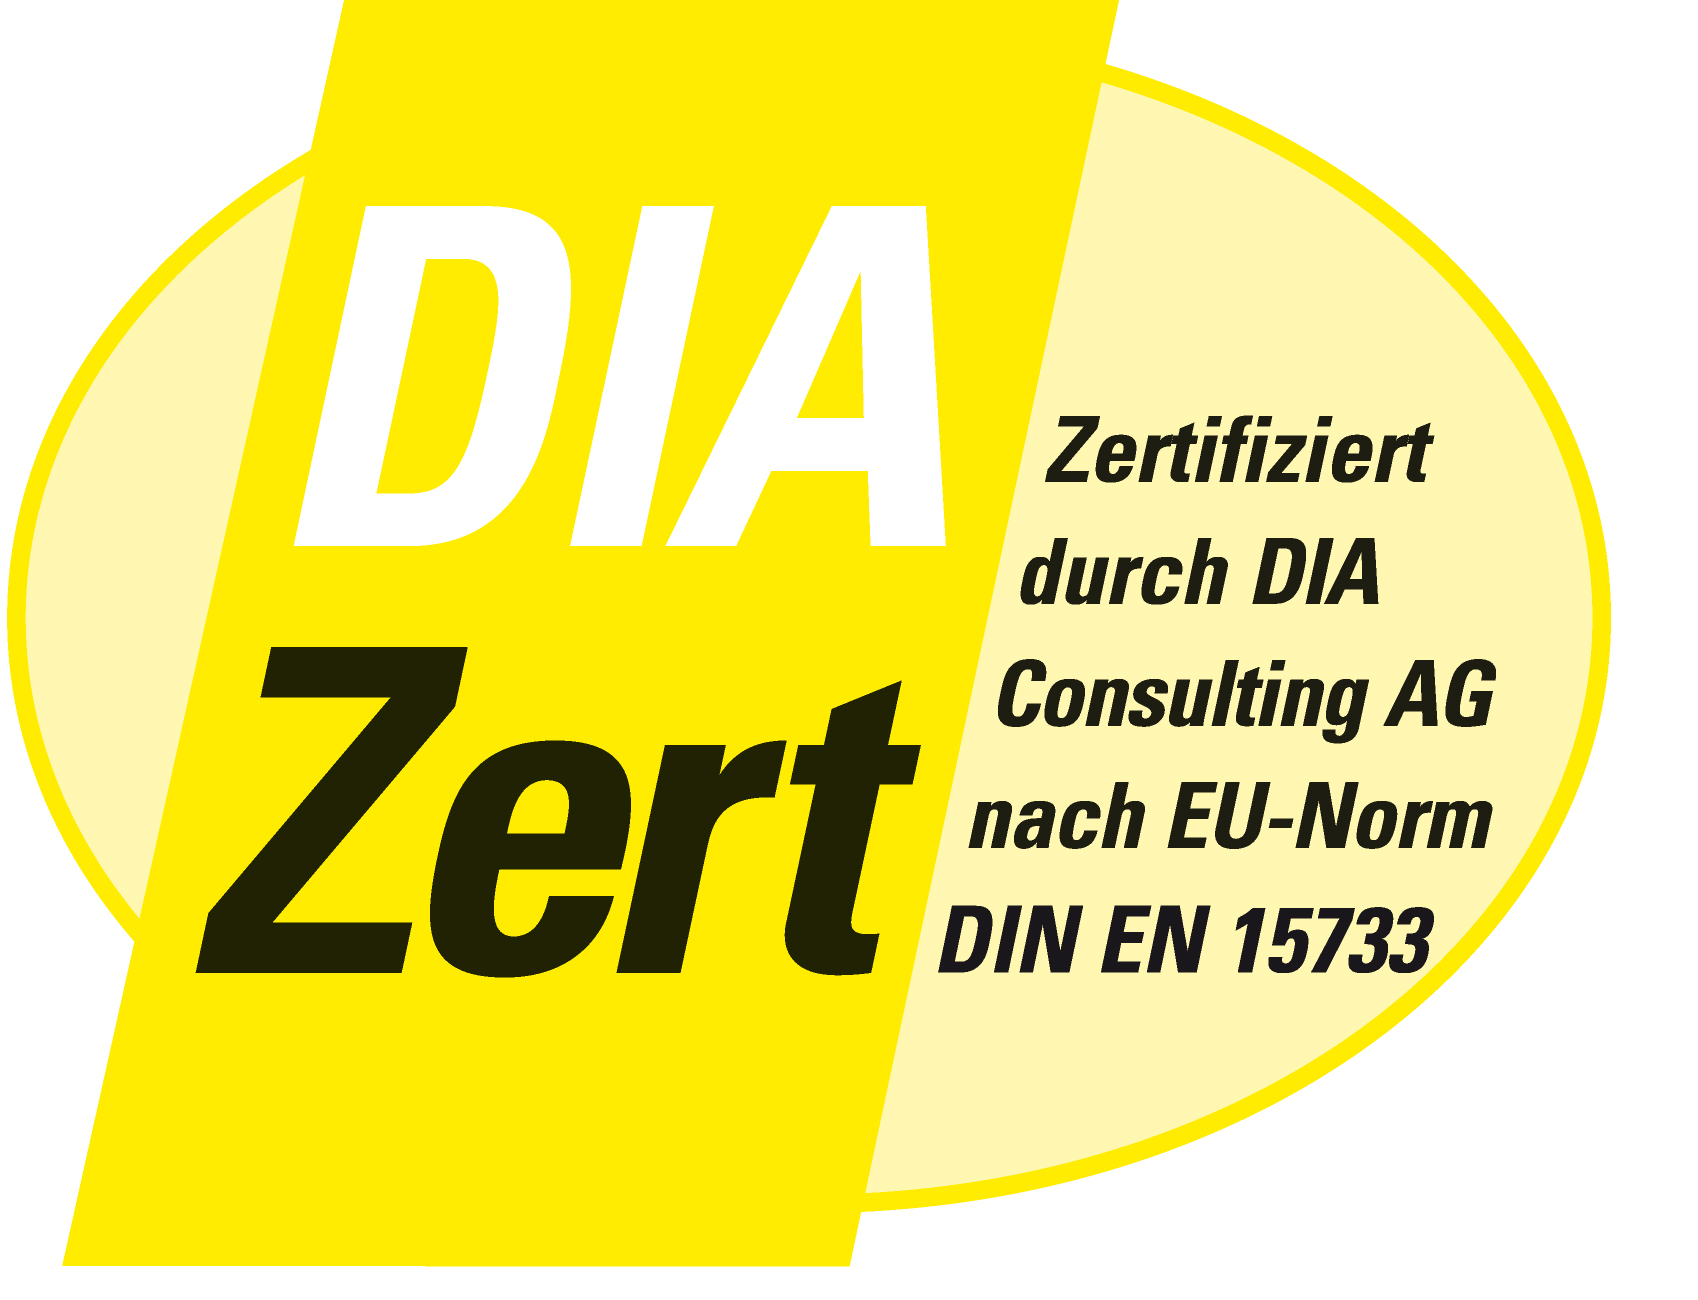 Erster zertifizierter Immobilienmakler (DIA) in Stuttgart,
Immobiliengutachter, Bankkaufmann und Ausbilder (IHK).